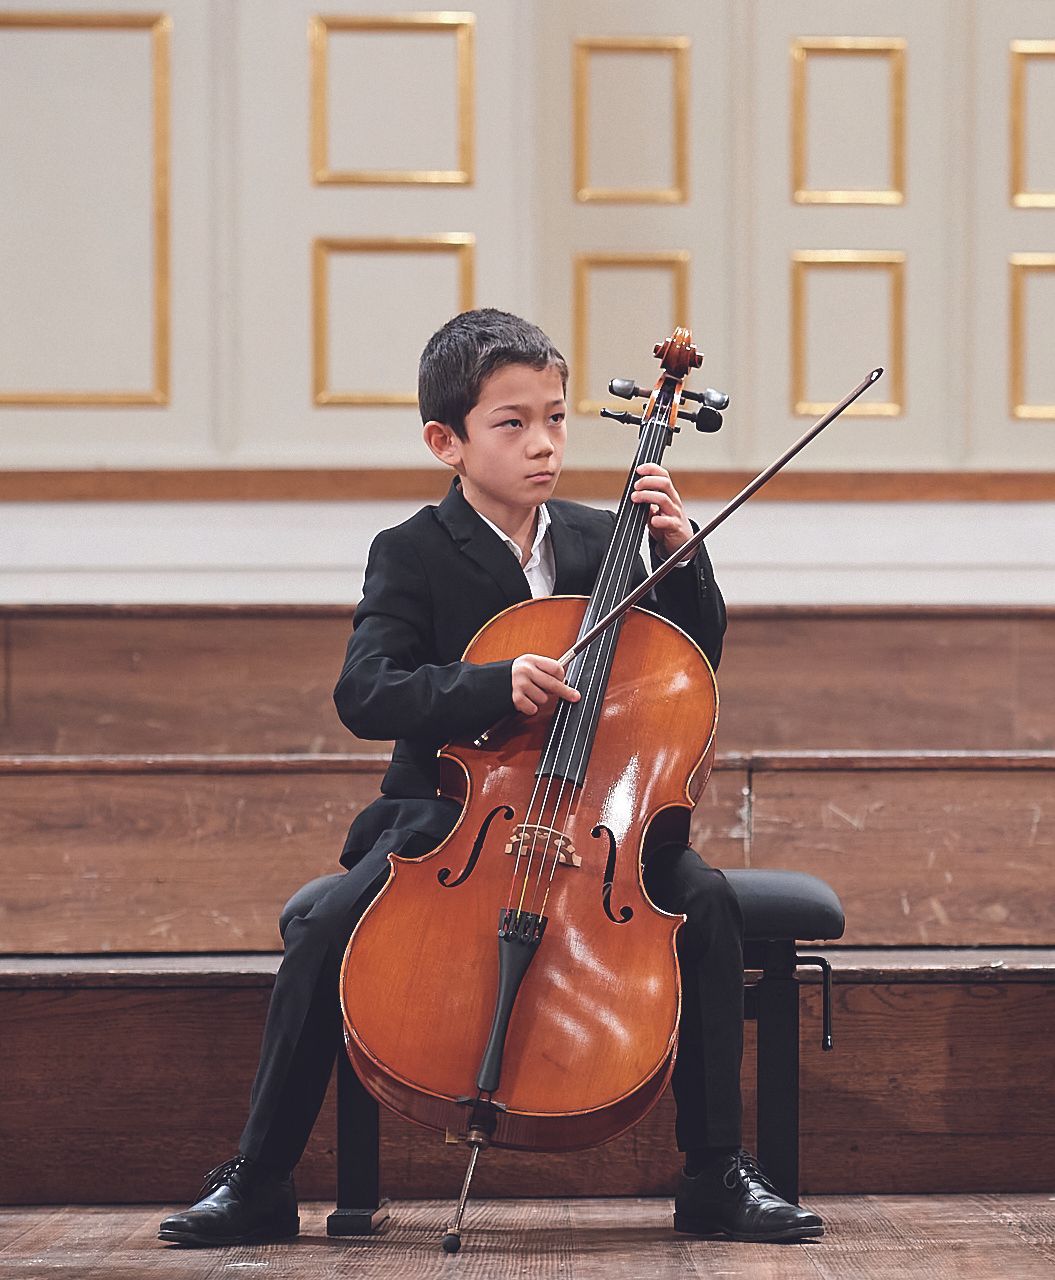 Junge mit Cello